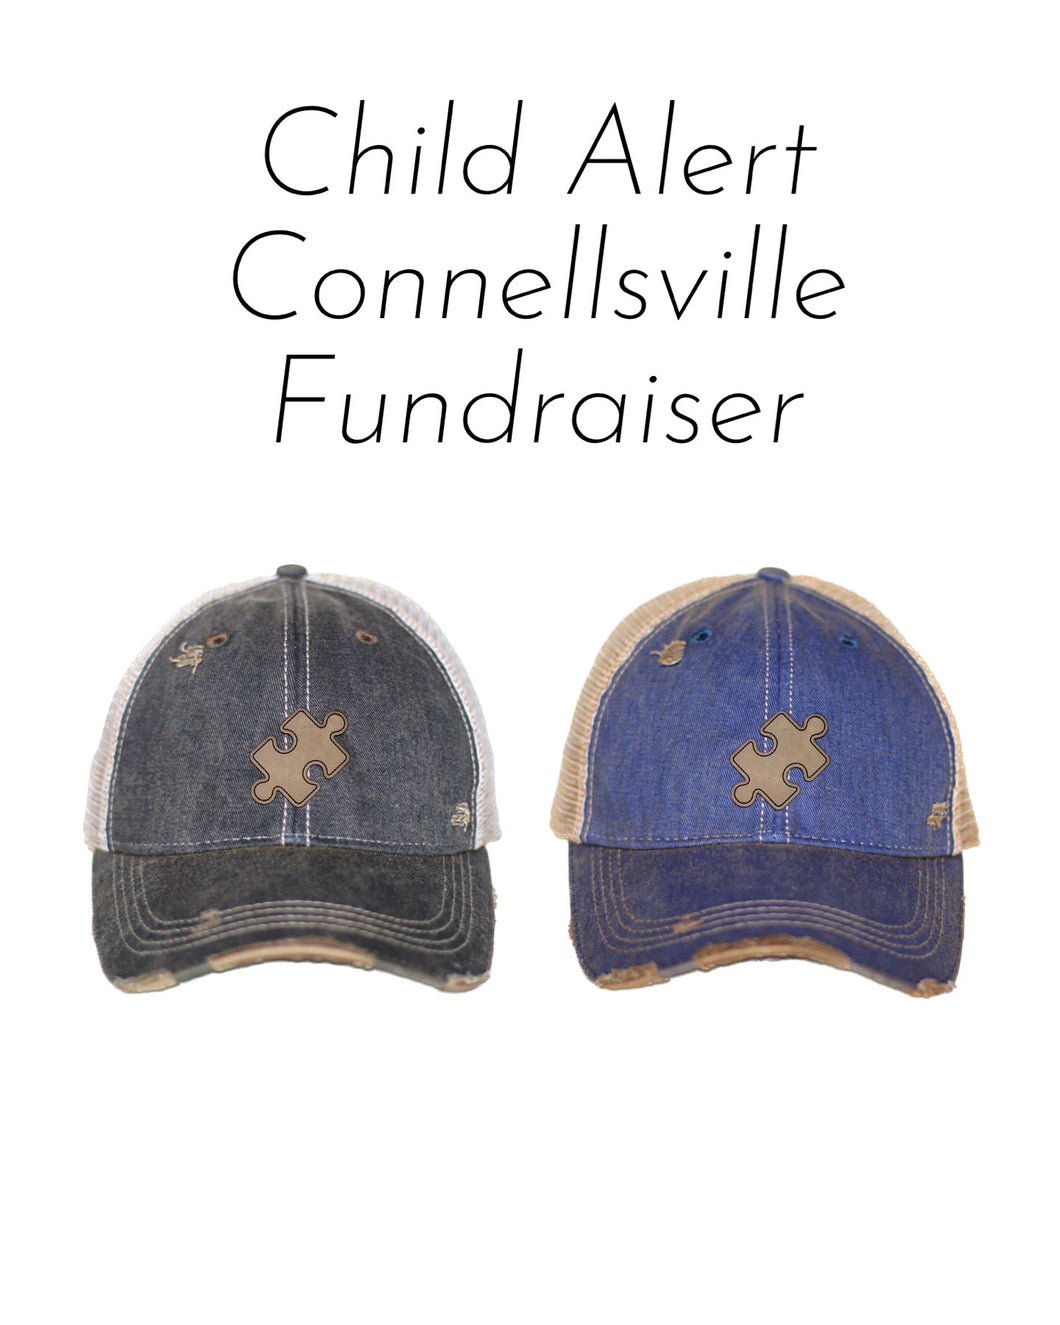 Child Alert: Connellsville